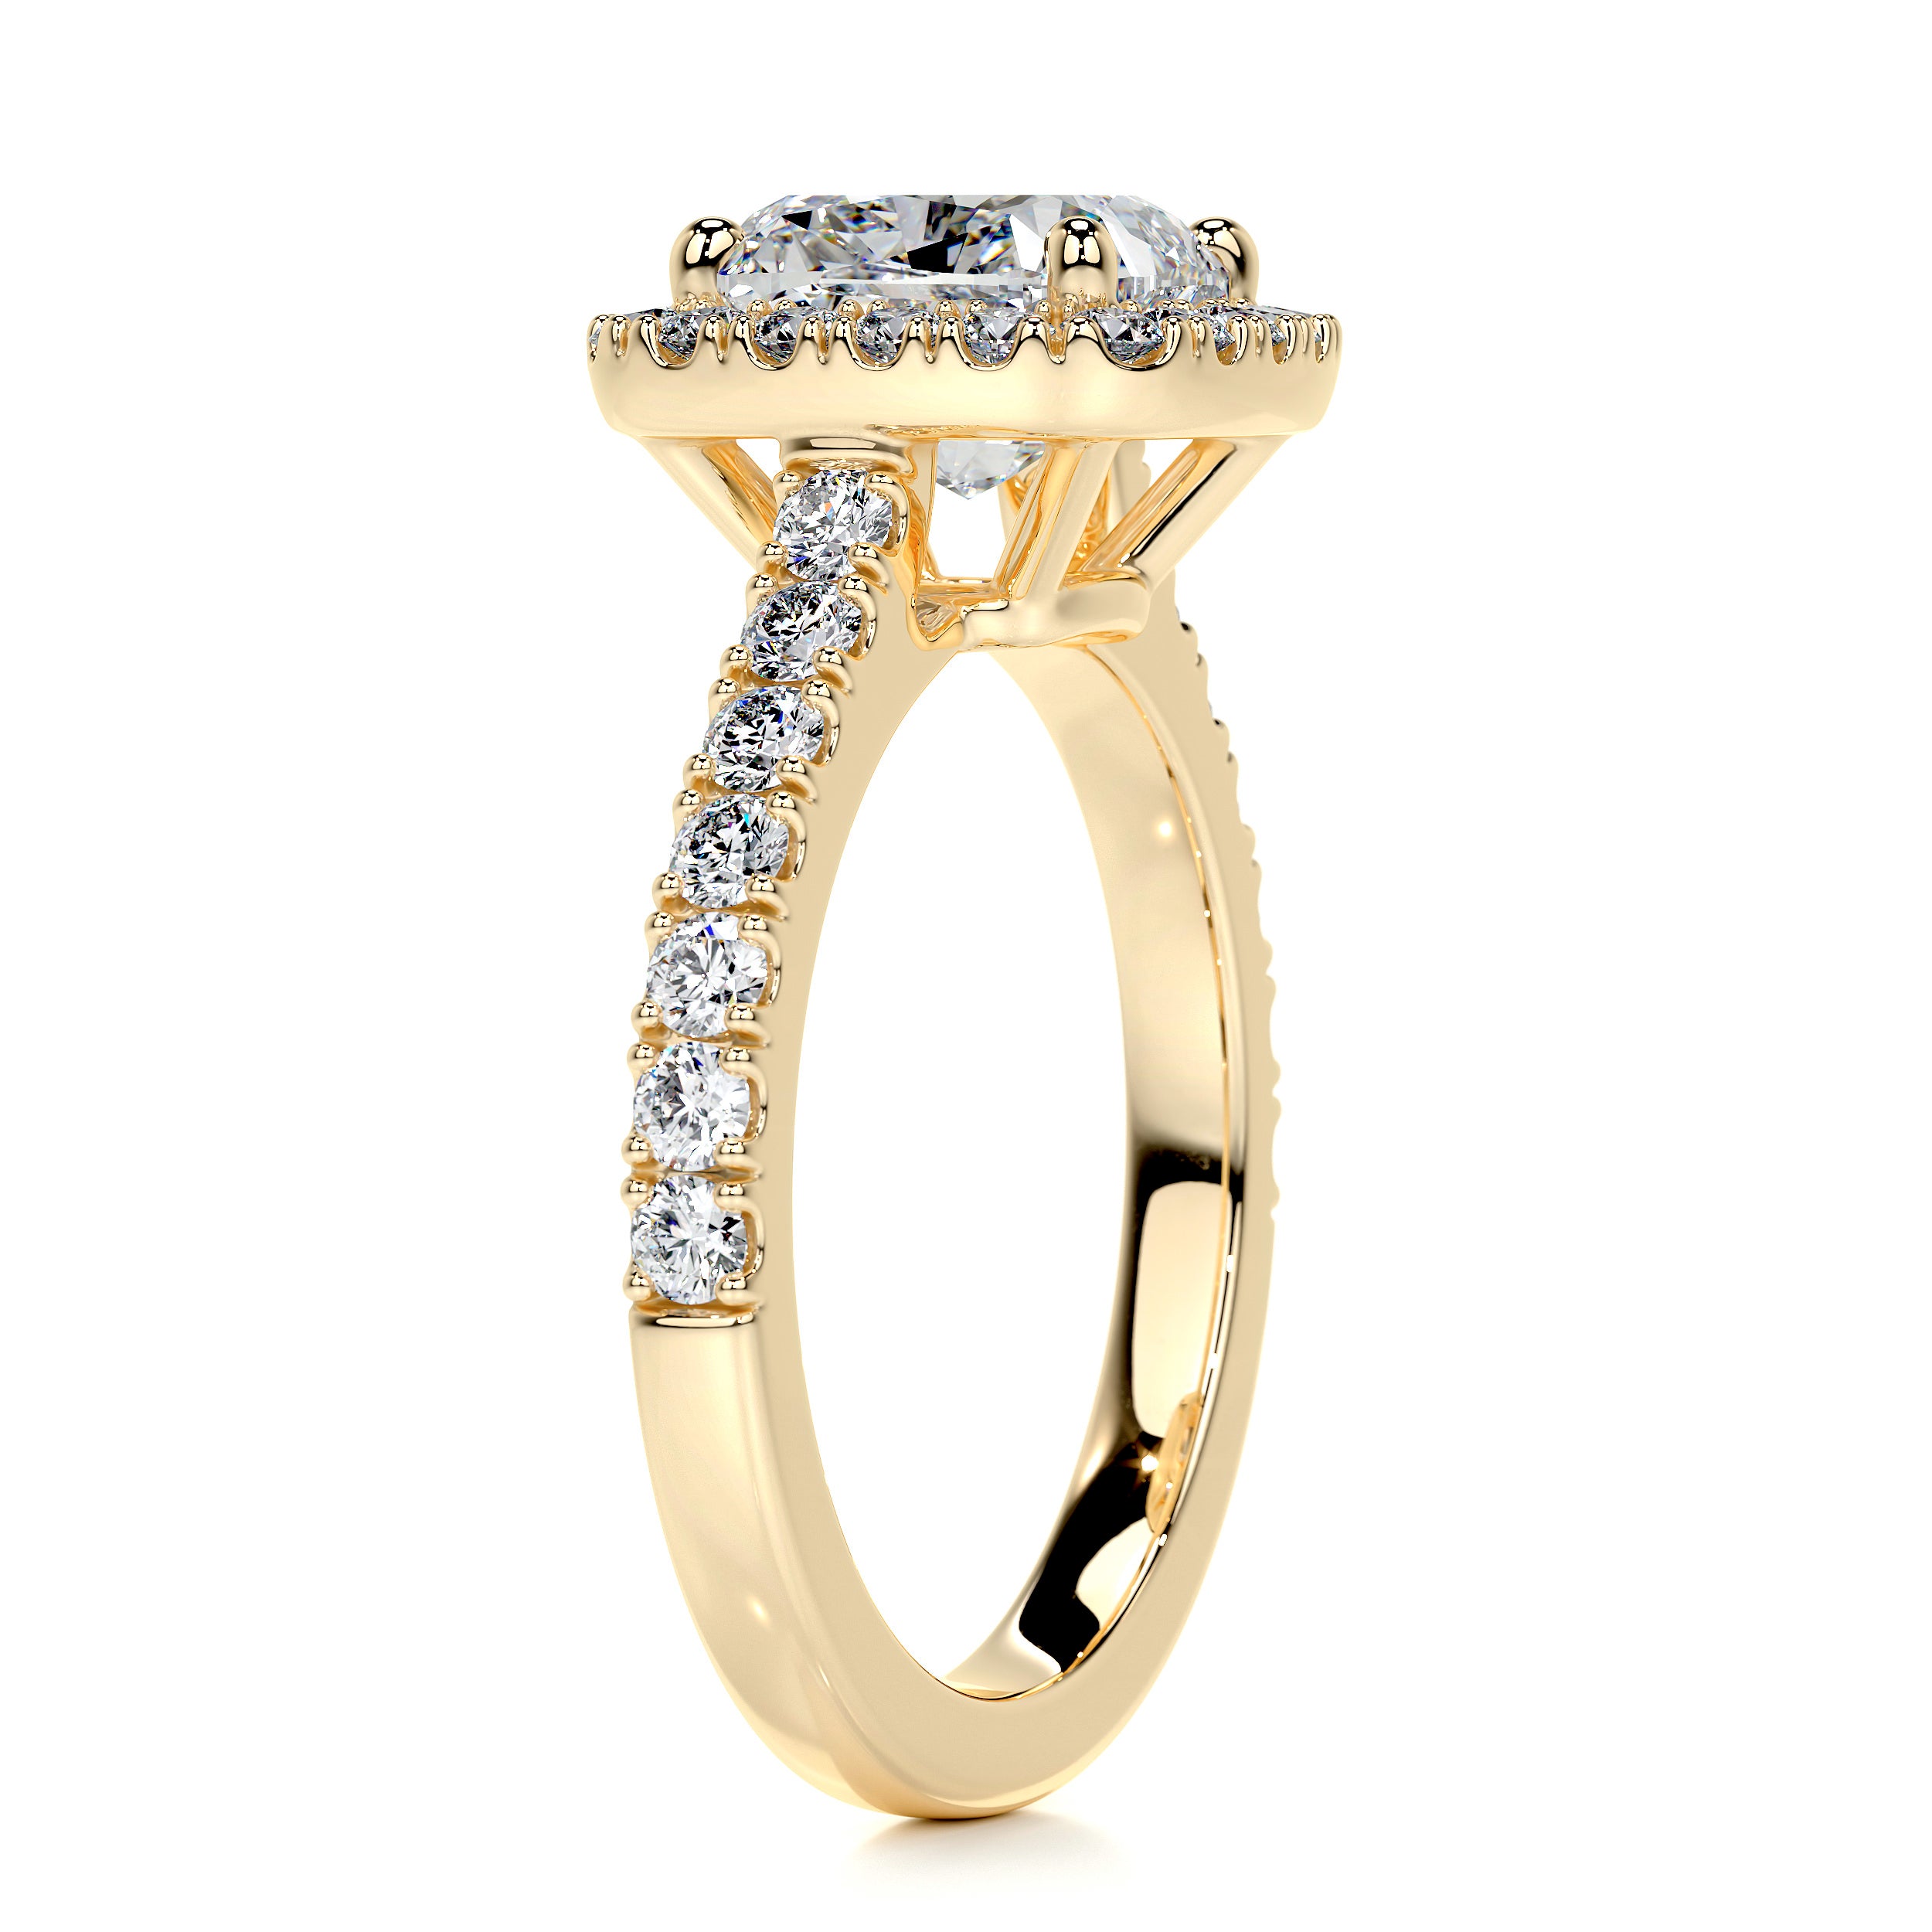 Celeste Diamond Engagement Ring -18K Yellow Gold